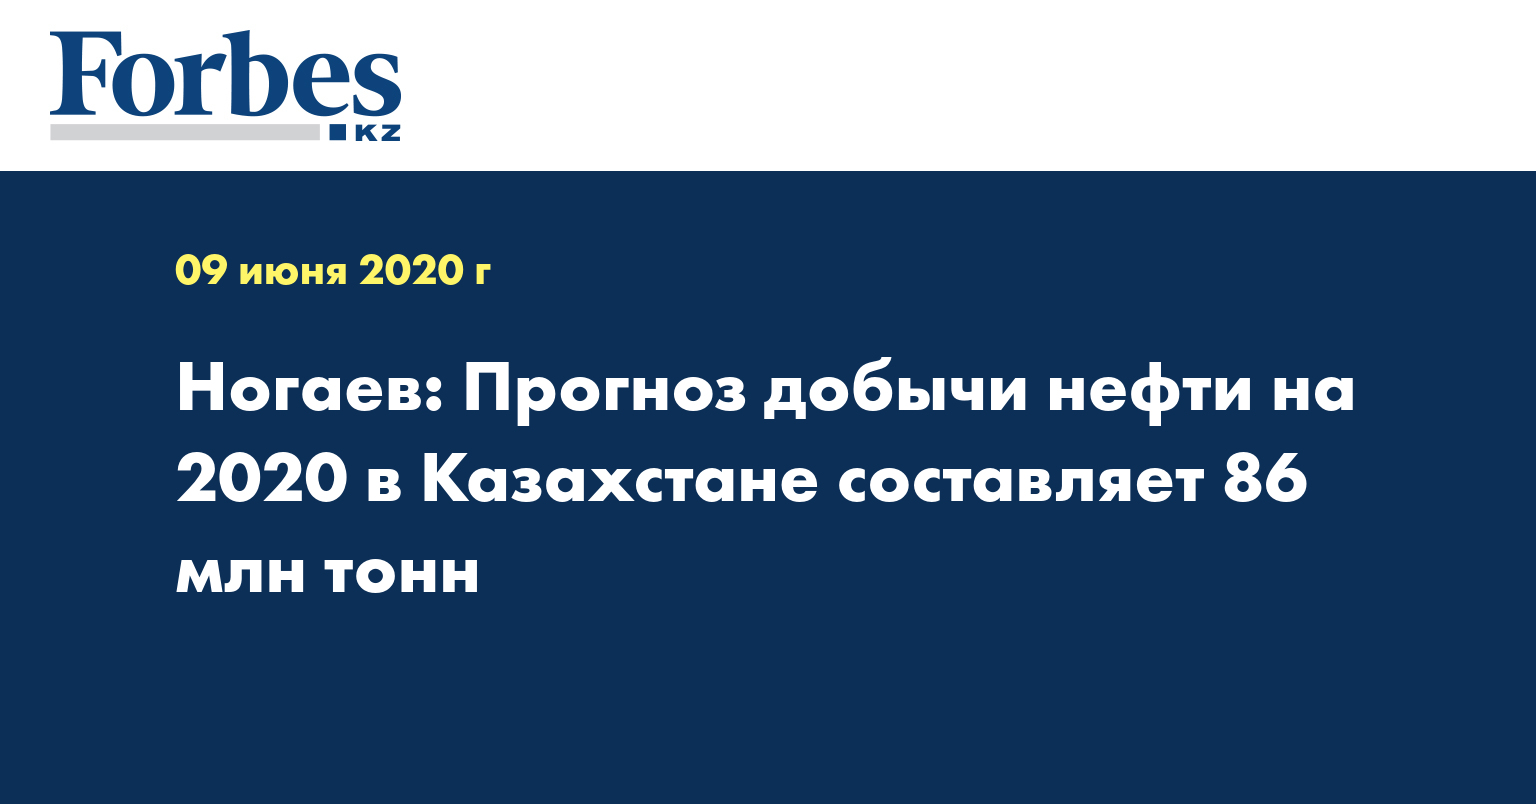 Ногаев: Прогноз добычи нефти на 2020 в Казахстане составляет 86 млн тонн